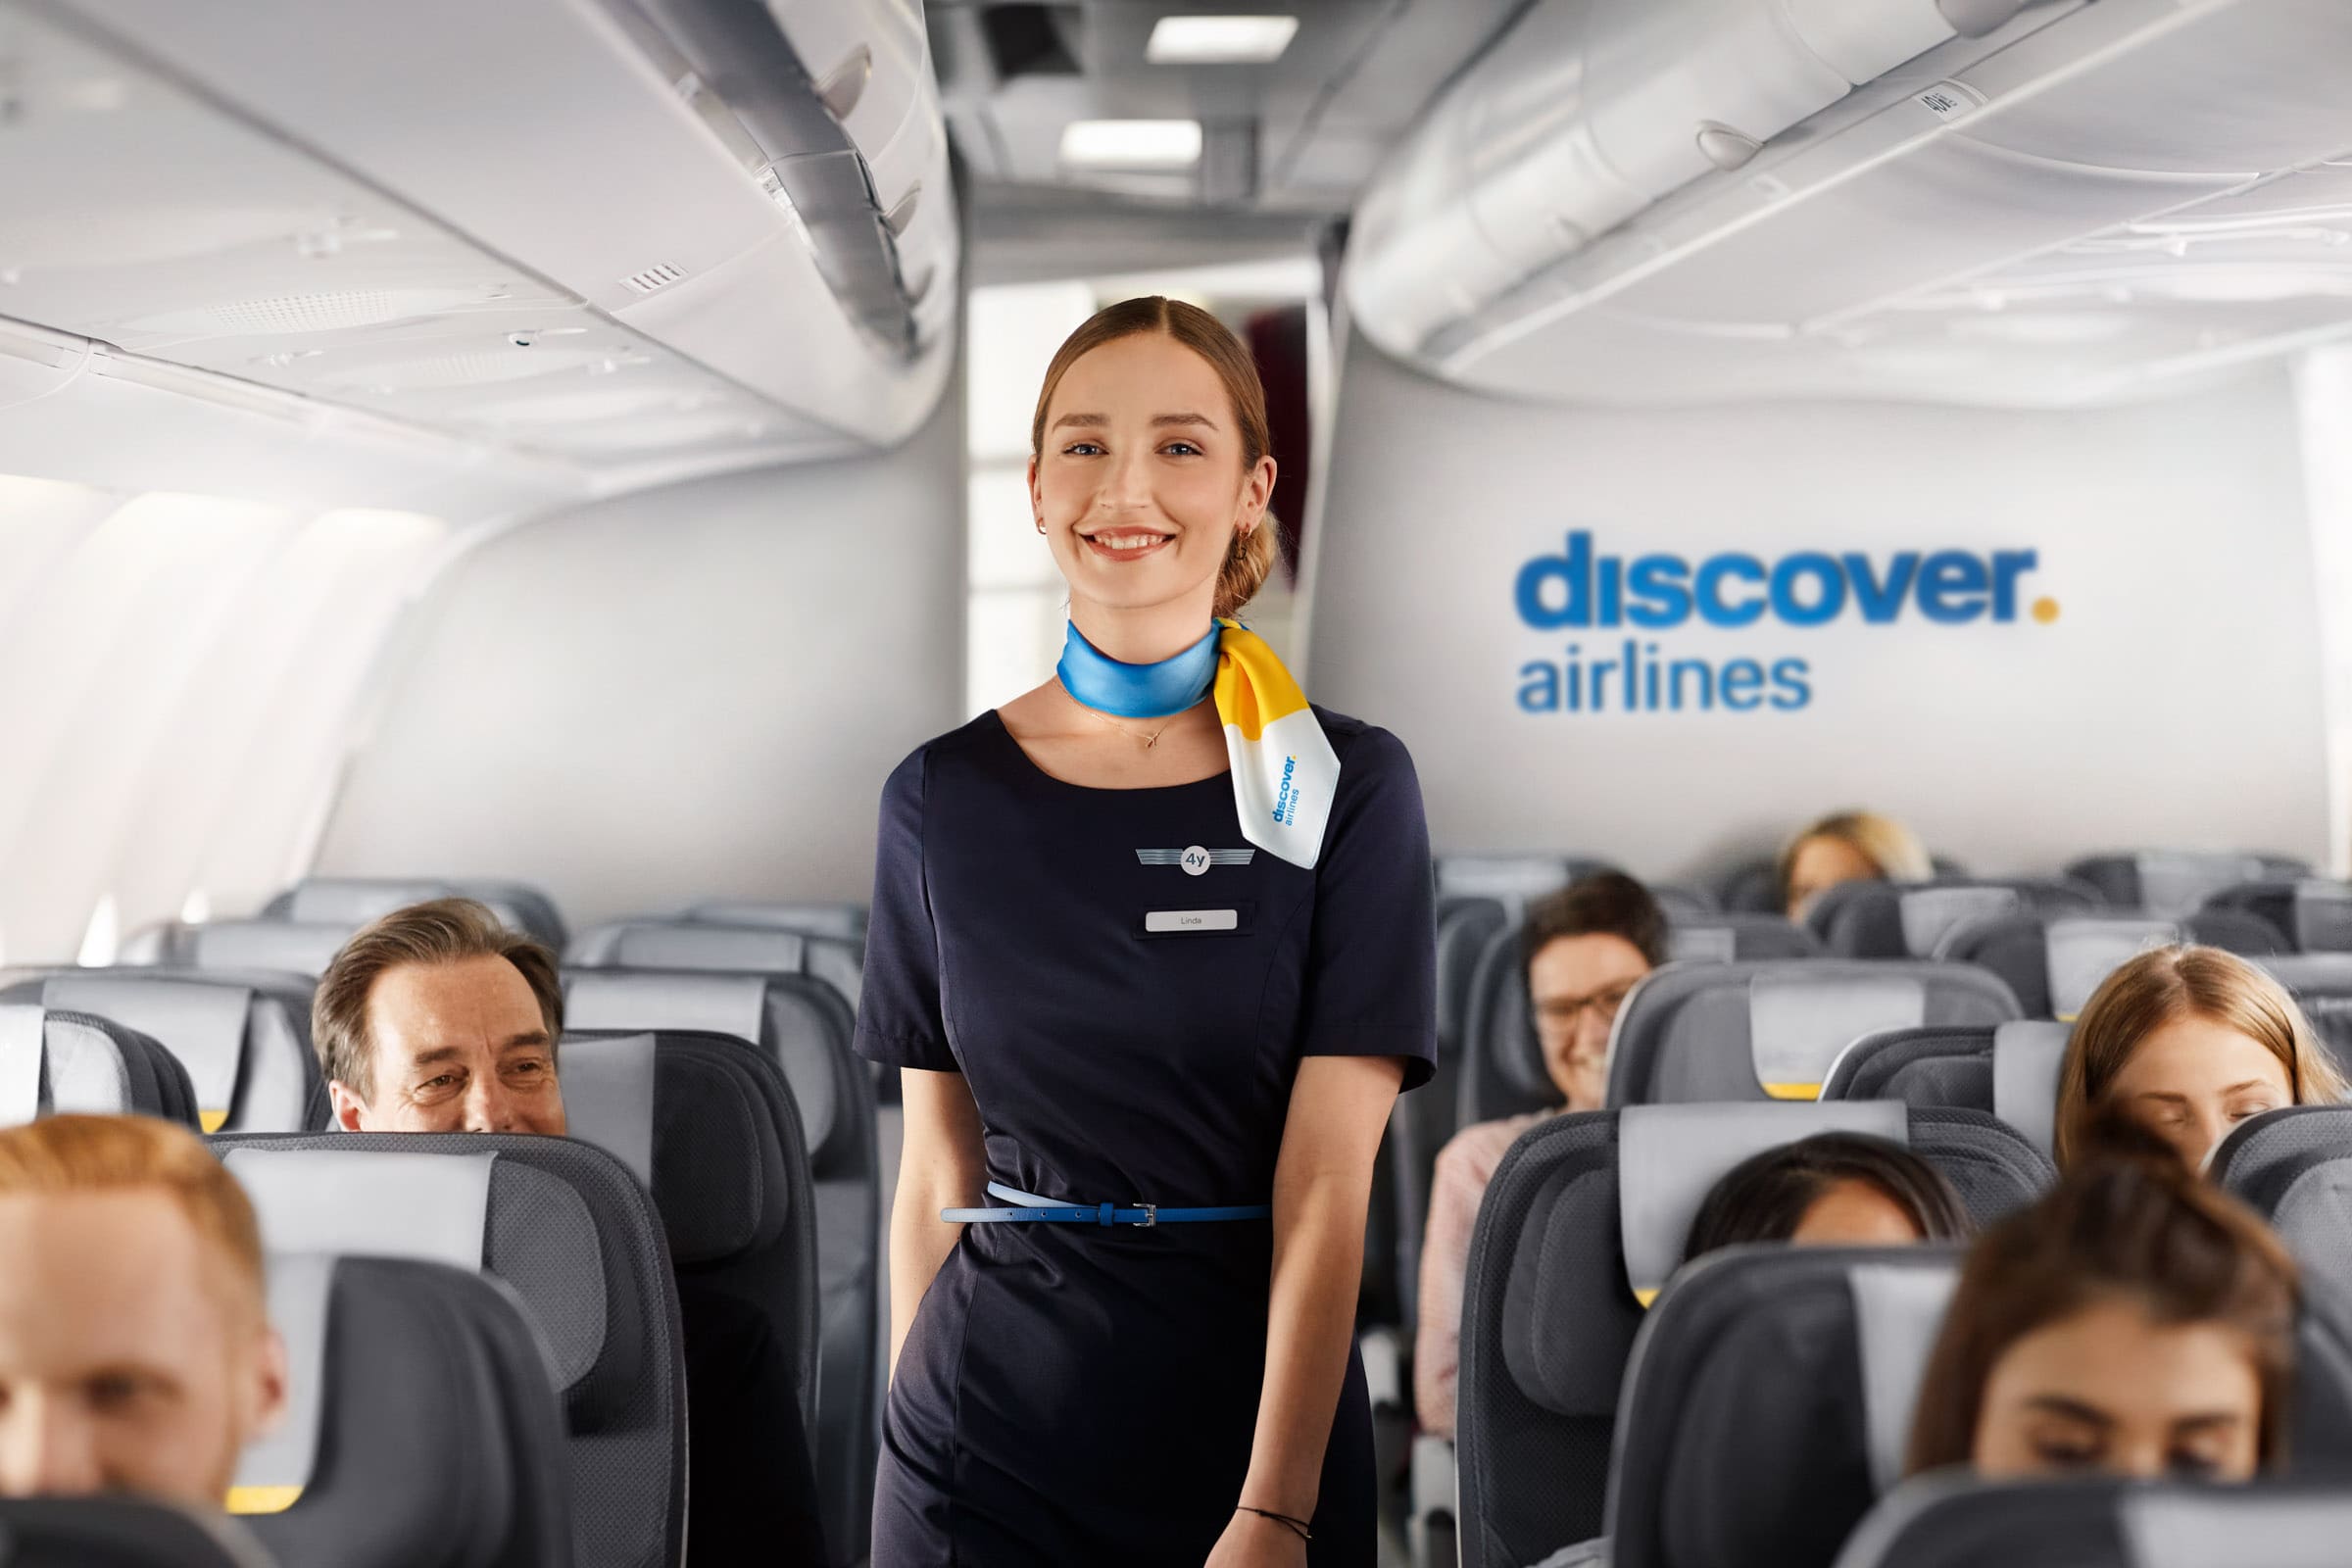  Discover Airlines, die Ferienfluggesellschaft der Lufthansa Group